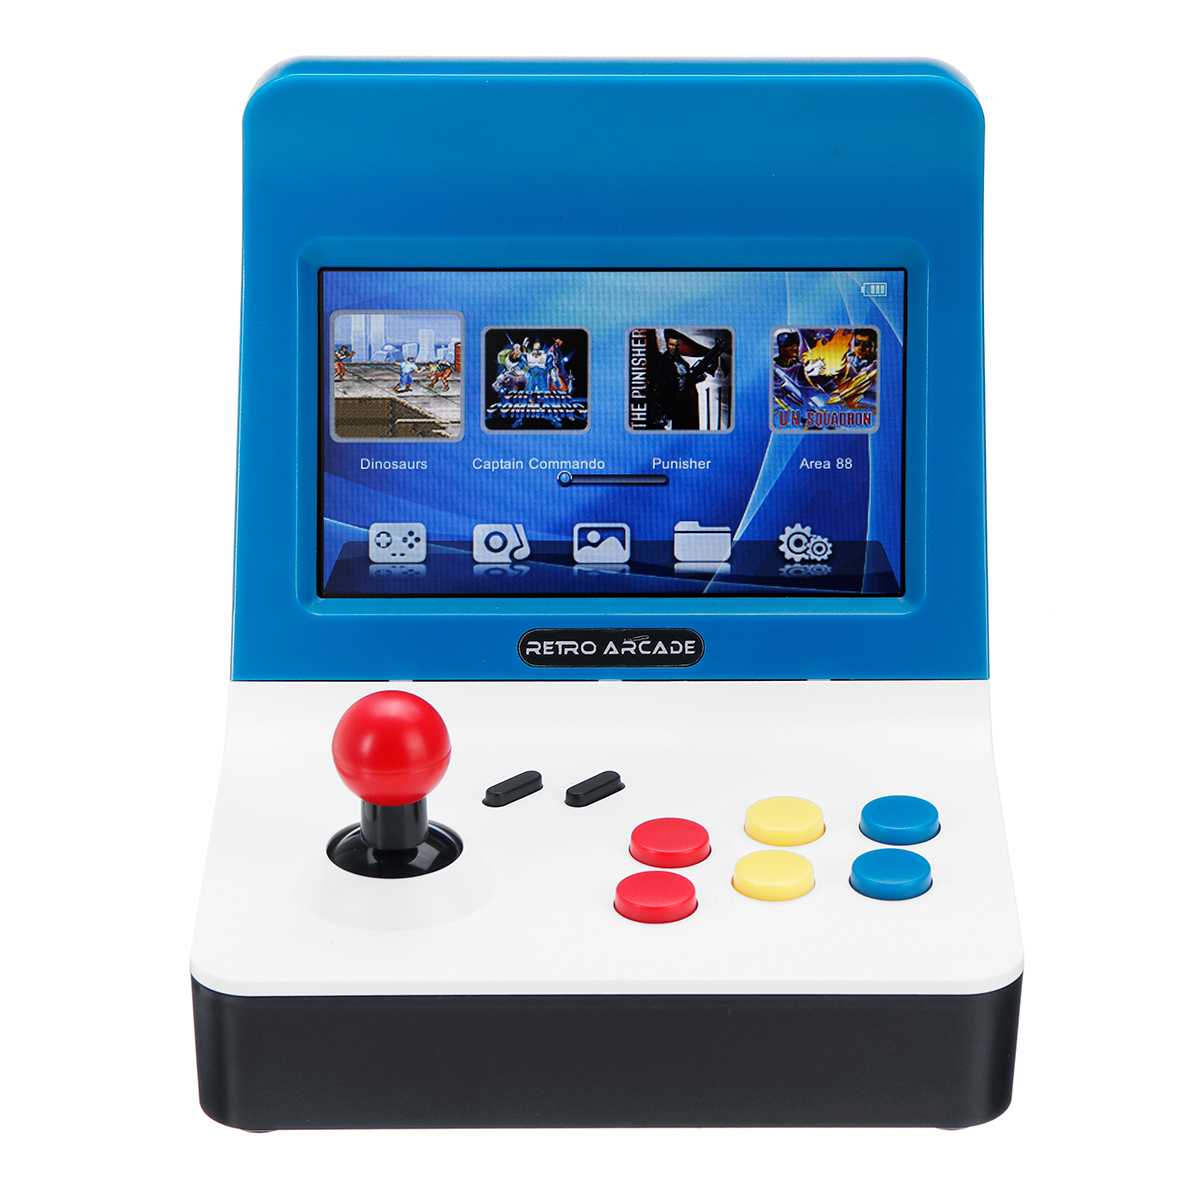 NEOGEO Retro Arcade Mini Handheld Game Console 3000 Classic Video Games 10